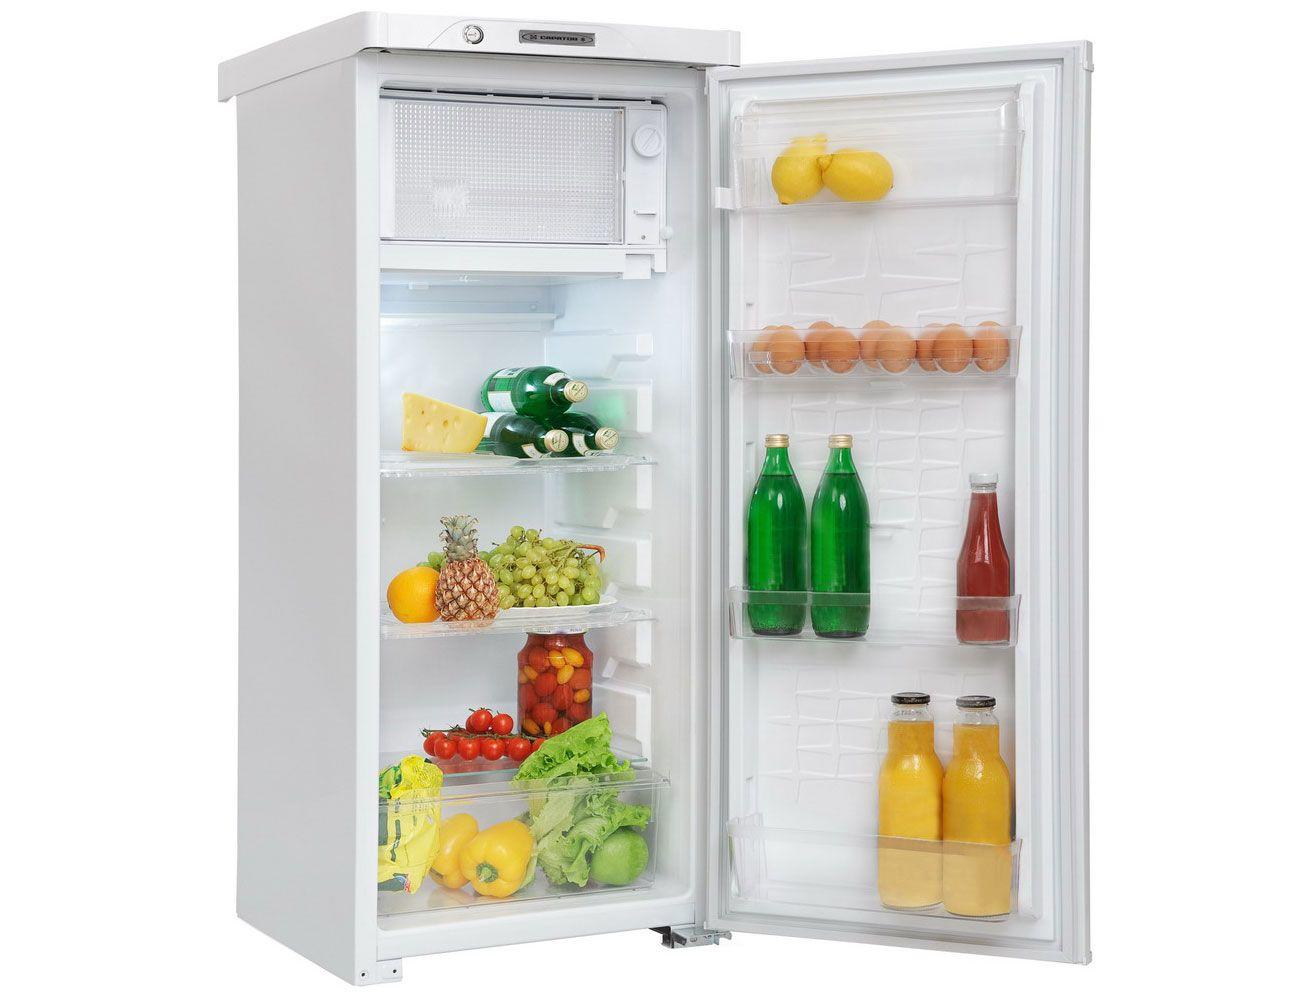 Холодильник может шуметь, если он придвинут очень близко к стене